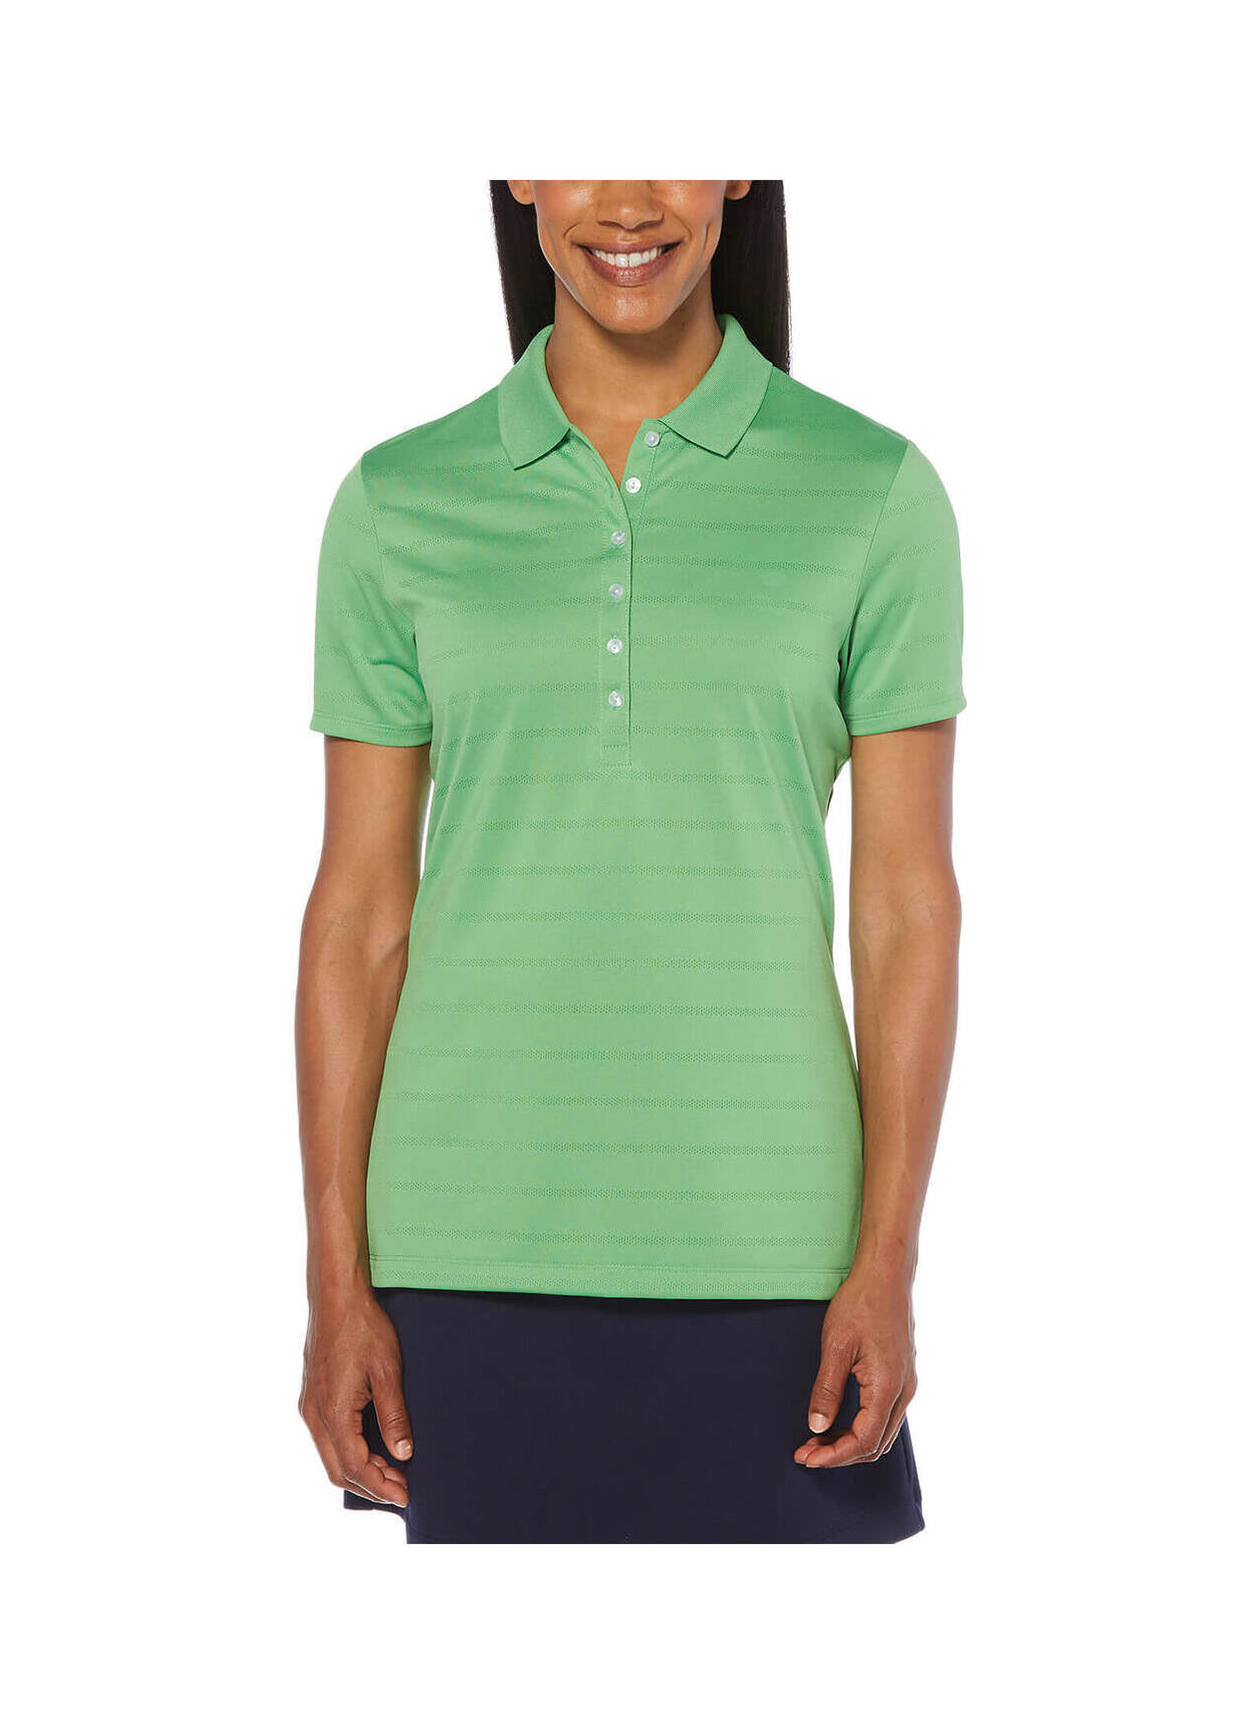 Callaway Women's Vibrant Green Opti-Vent Polo | Custom Logo Polo